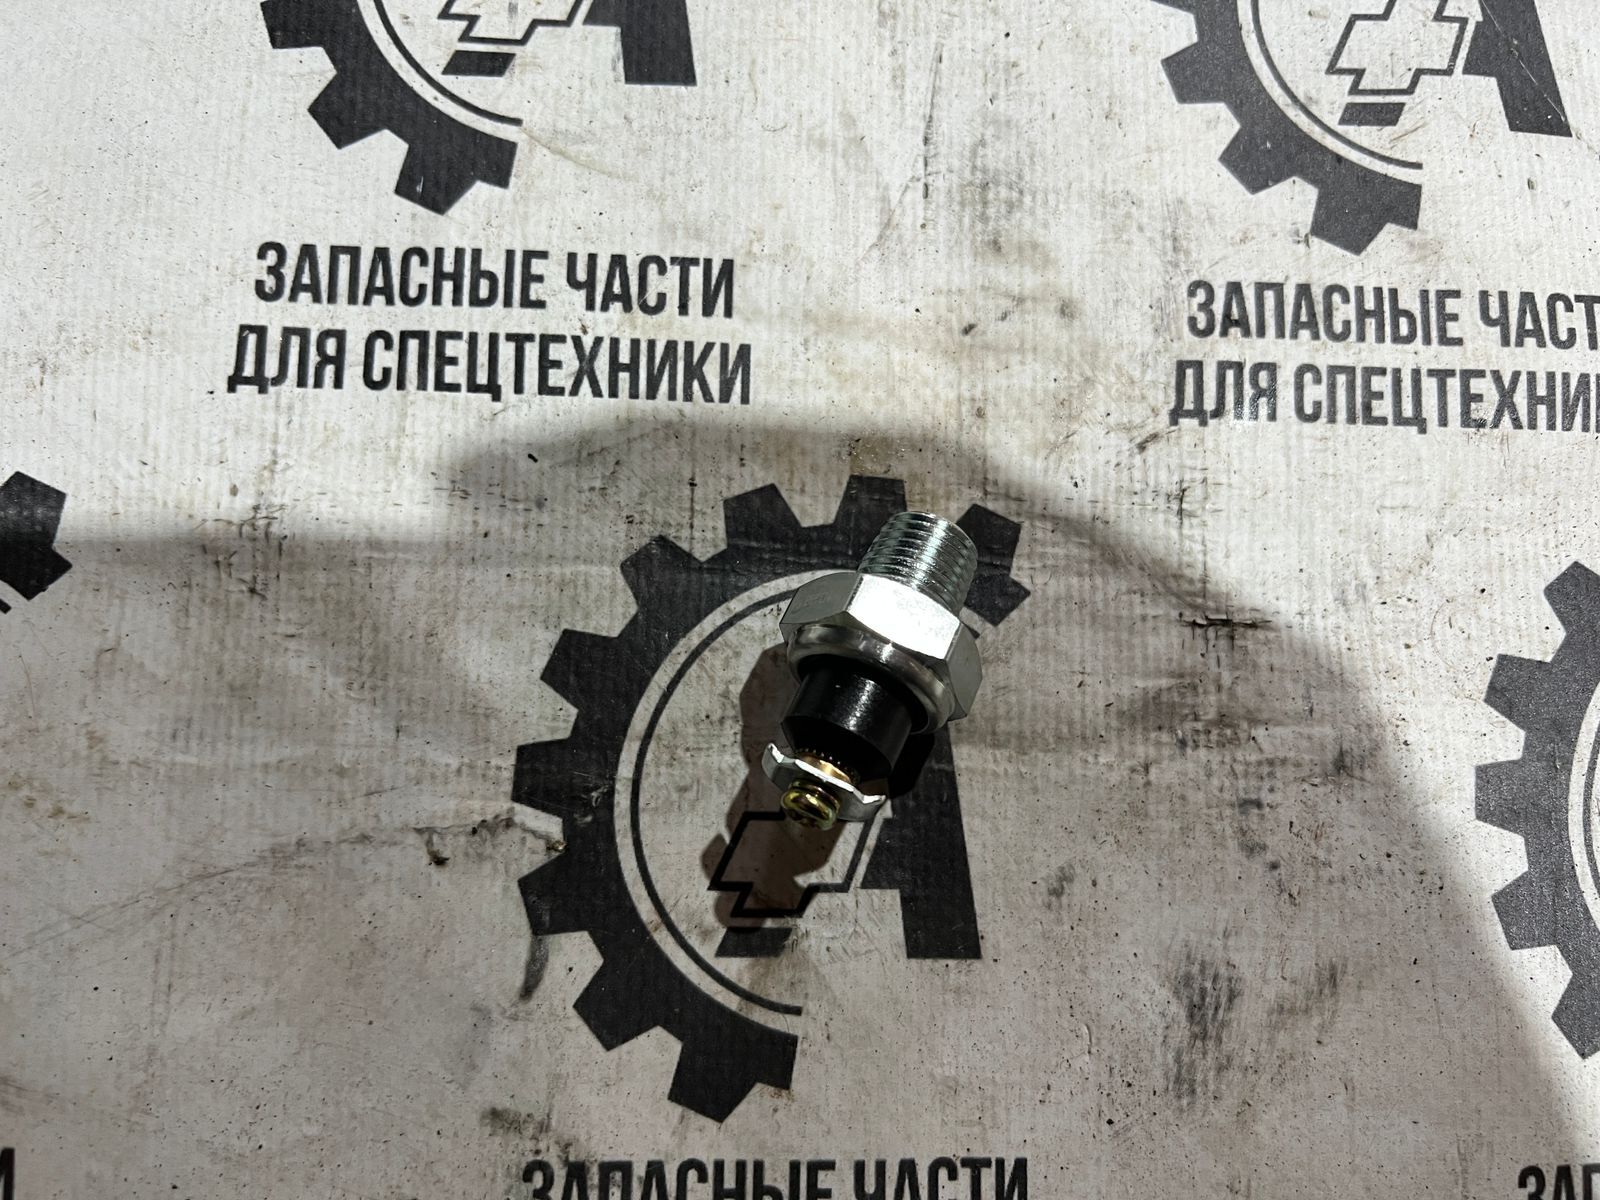 Датчик аварийного давления масла ММ111В-3810600 на гусеничный вездеход ГАЗ-71